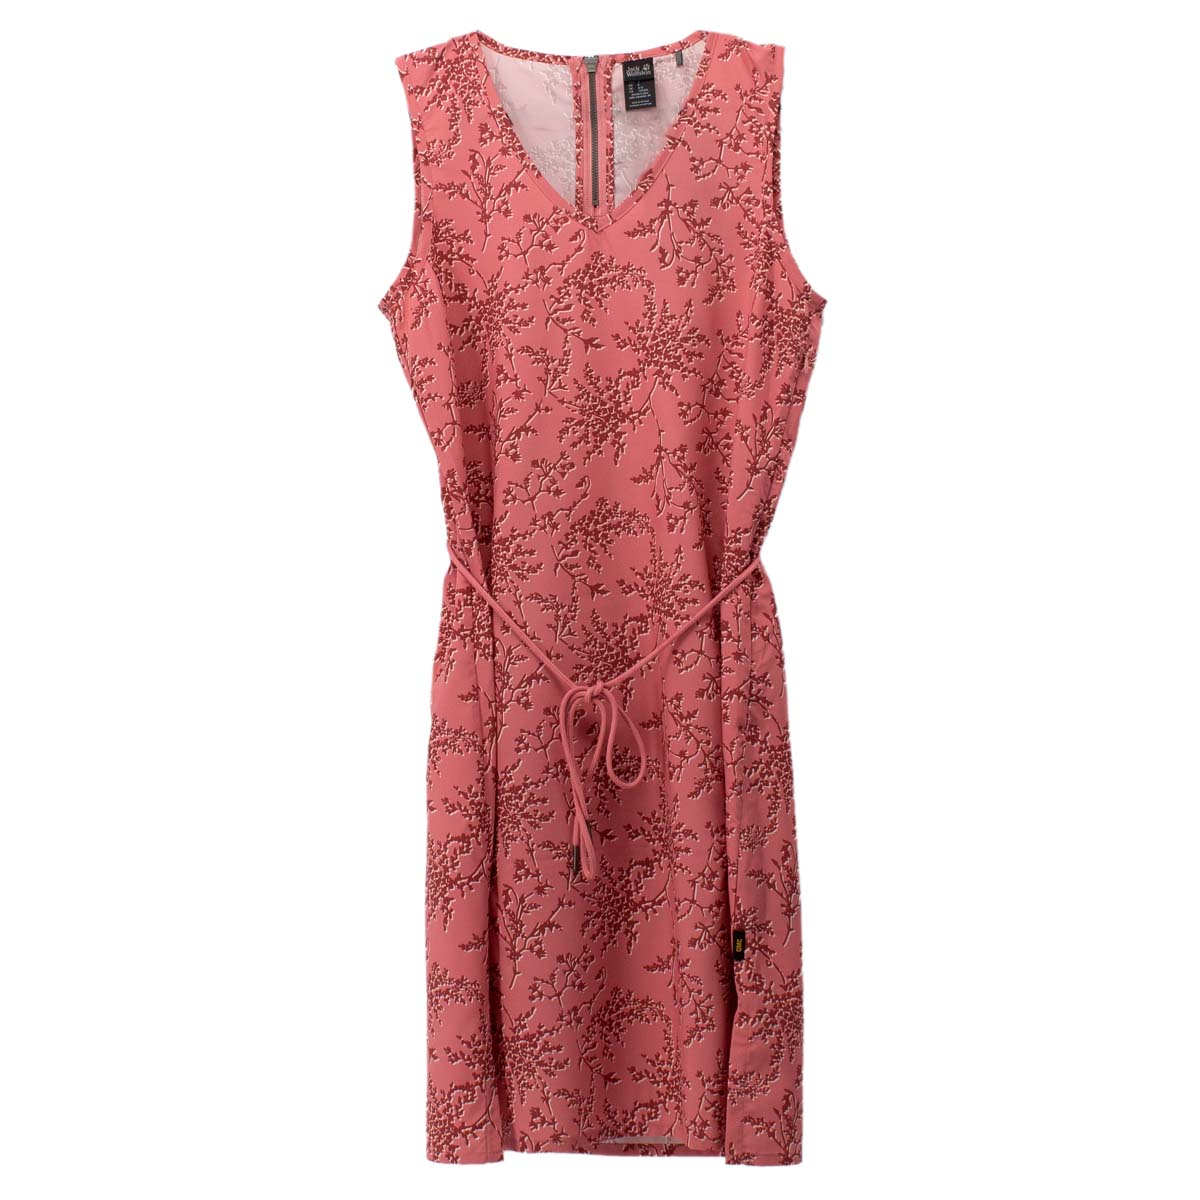 Jack Wolfskin Tioga Road Print Dress Damen Kleid Sommerkleid 1506101-7805 S